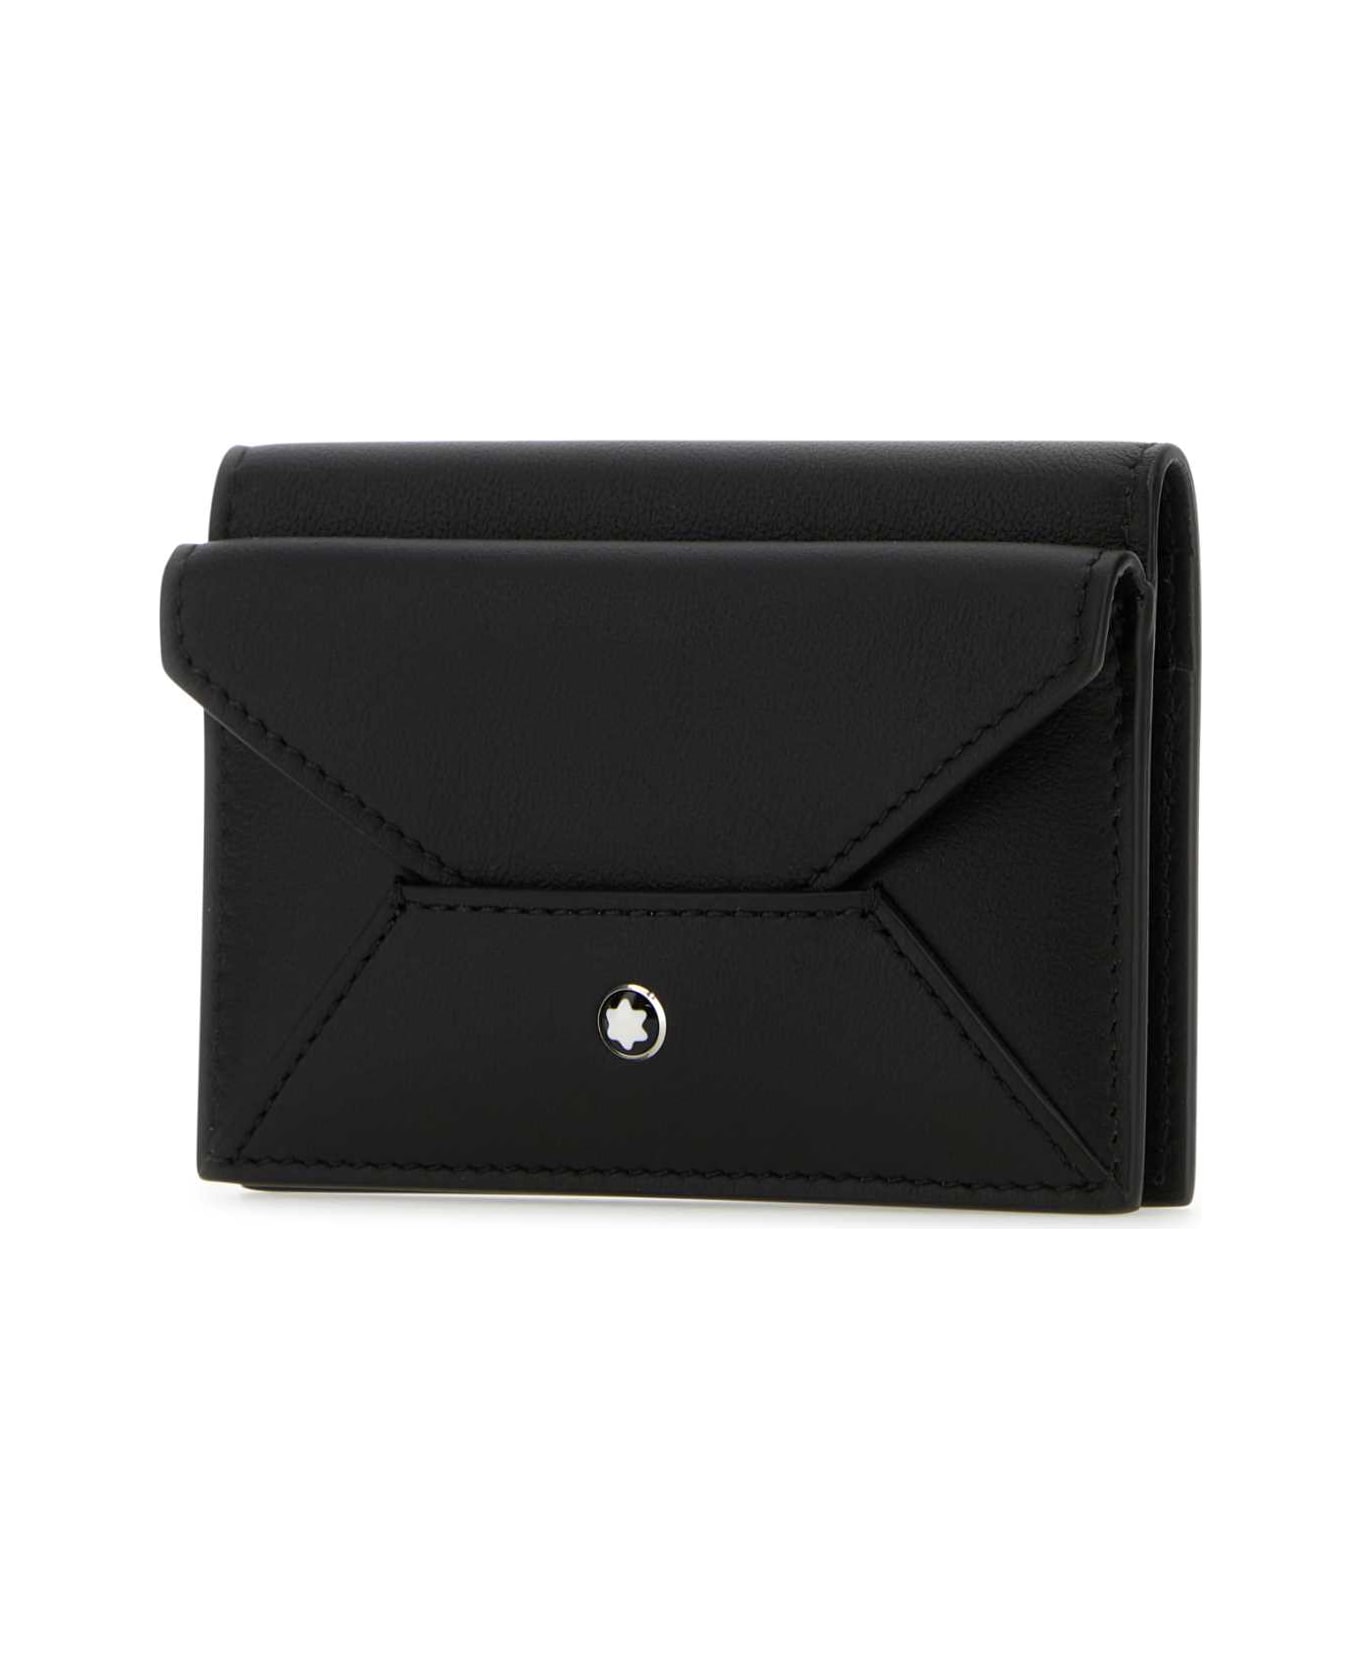 Montblanc Black Leather Cardholder - BLACK